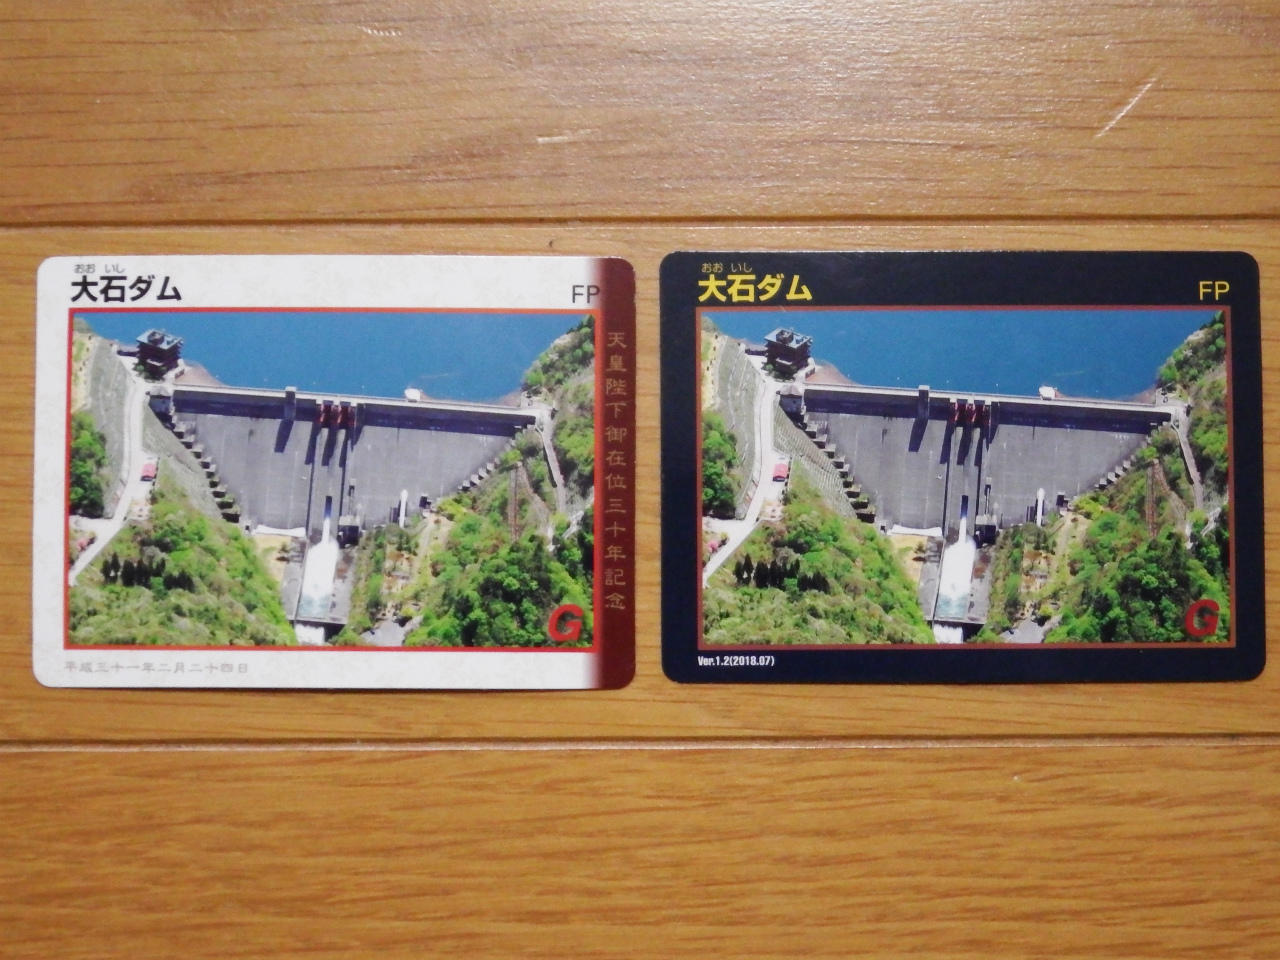 大石ダム 記念ダムカードゲット !: 新潟に生きる。